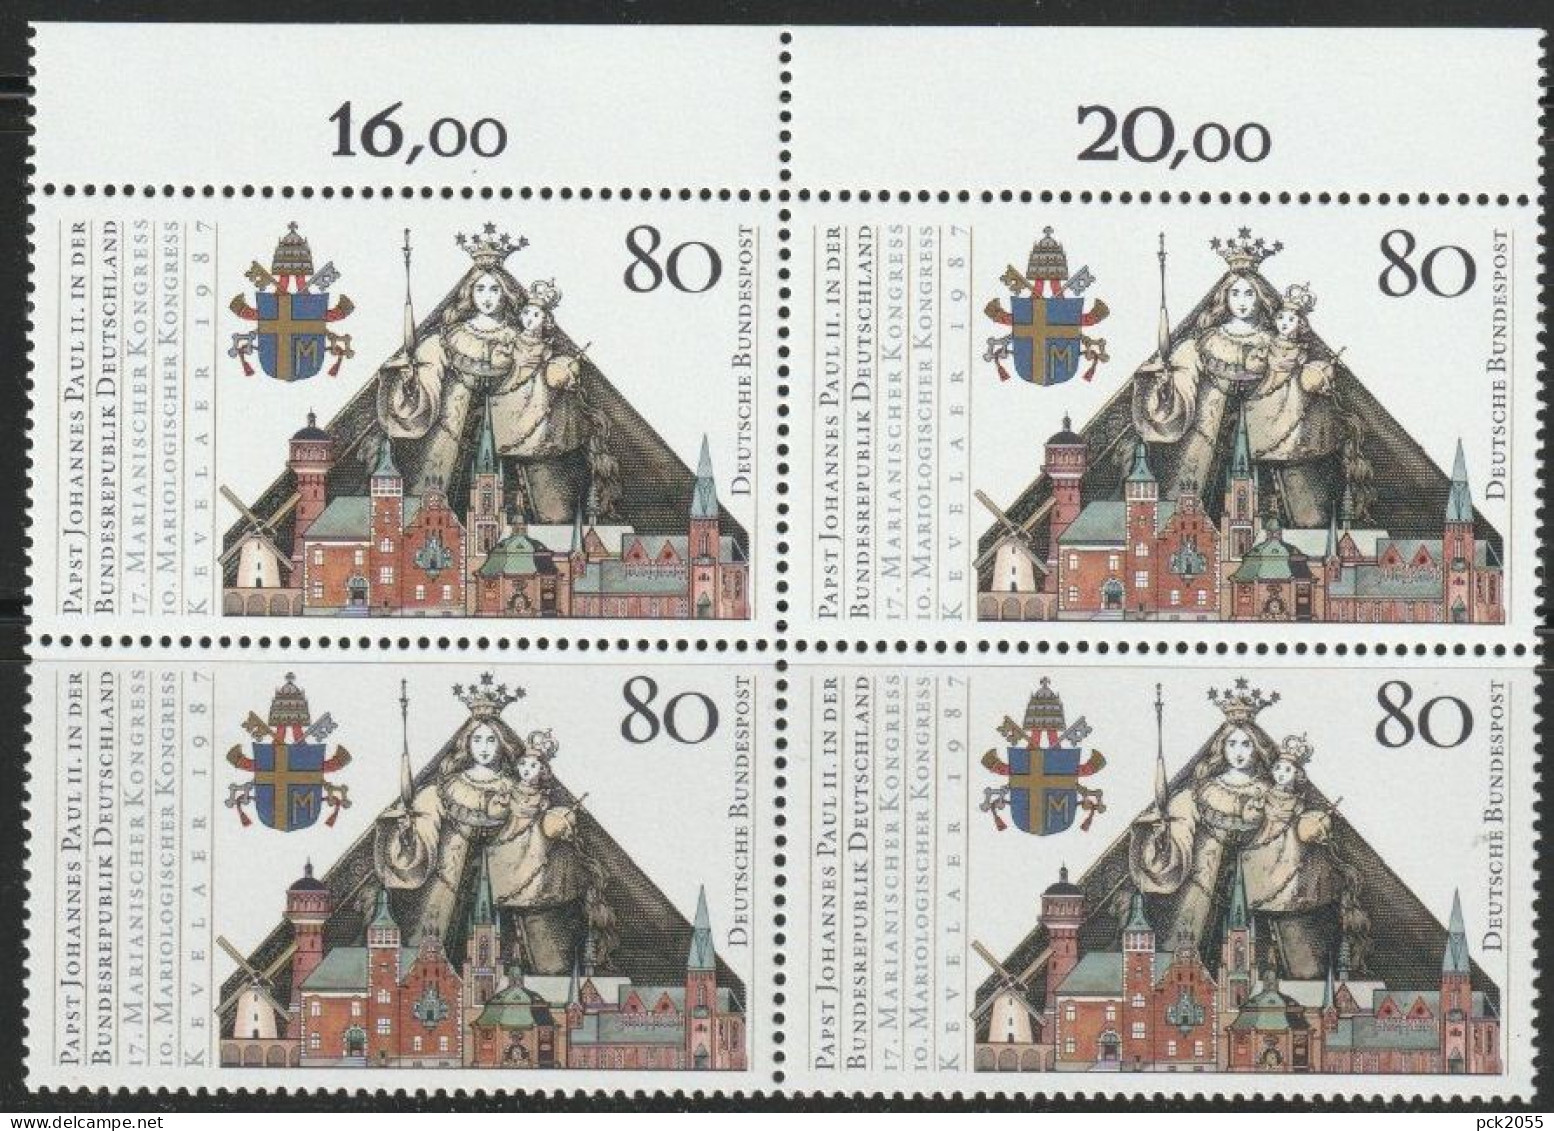 BRD 1987 MiNr.1320 4er Block ** Postfrisch Besuch Papst Johannes Paul II  ( 456 )günstige Versandkosten - Nuovi